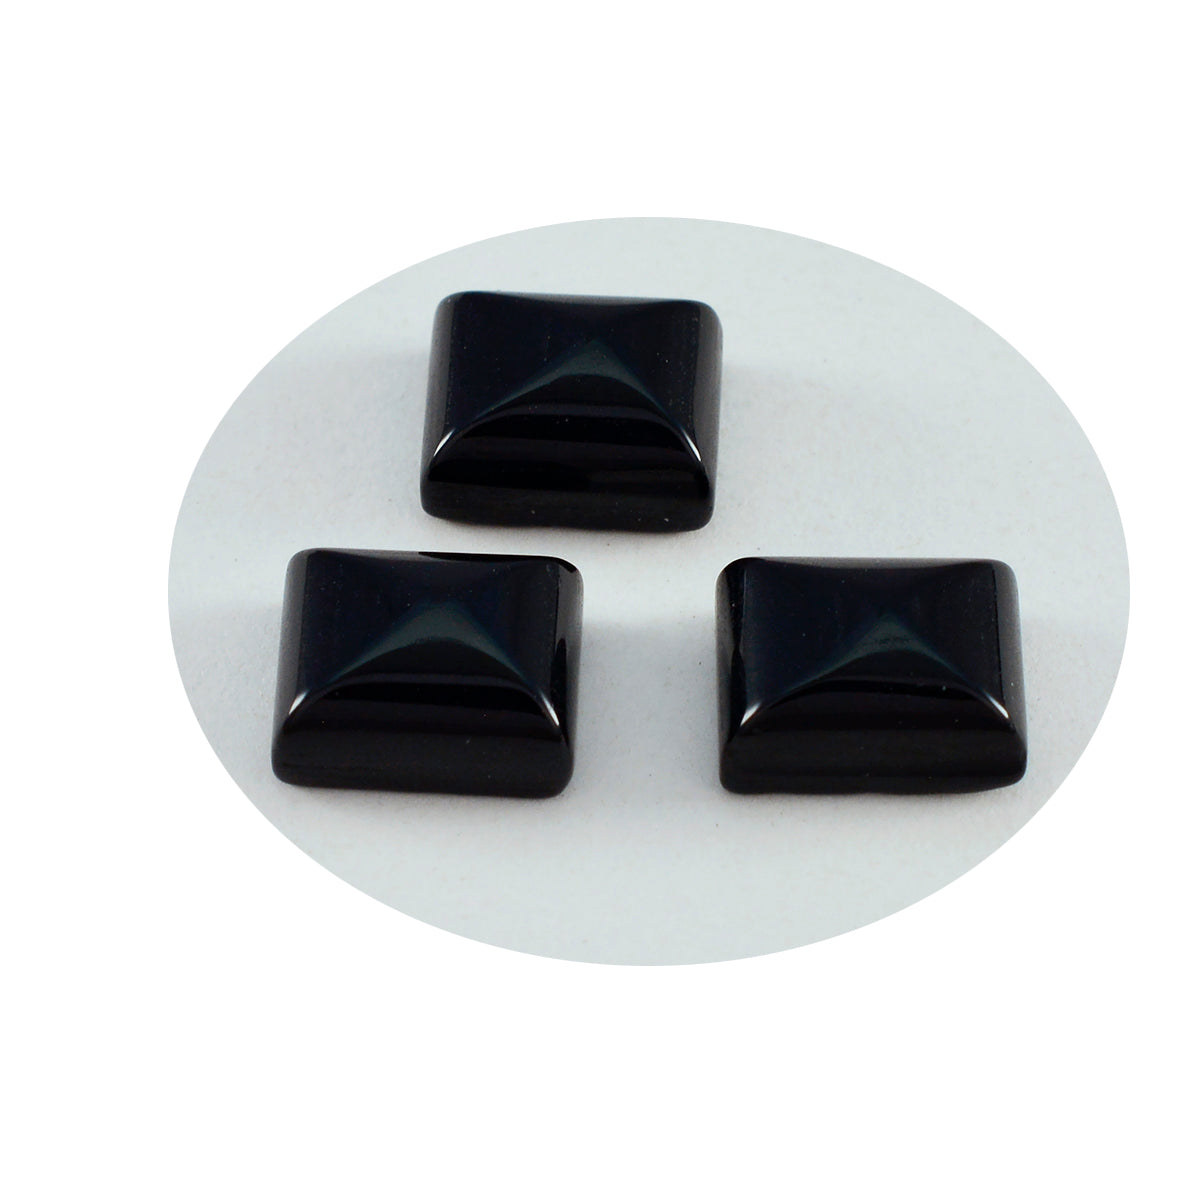 riyogems 1st svart onyx cabochon 10x12 mm oktagonform härliga kvalitetsädelstenar